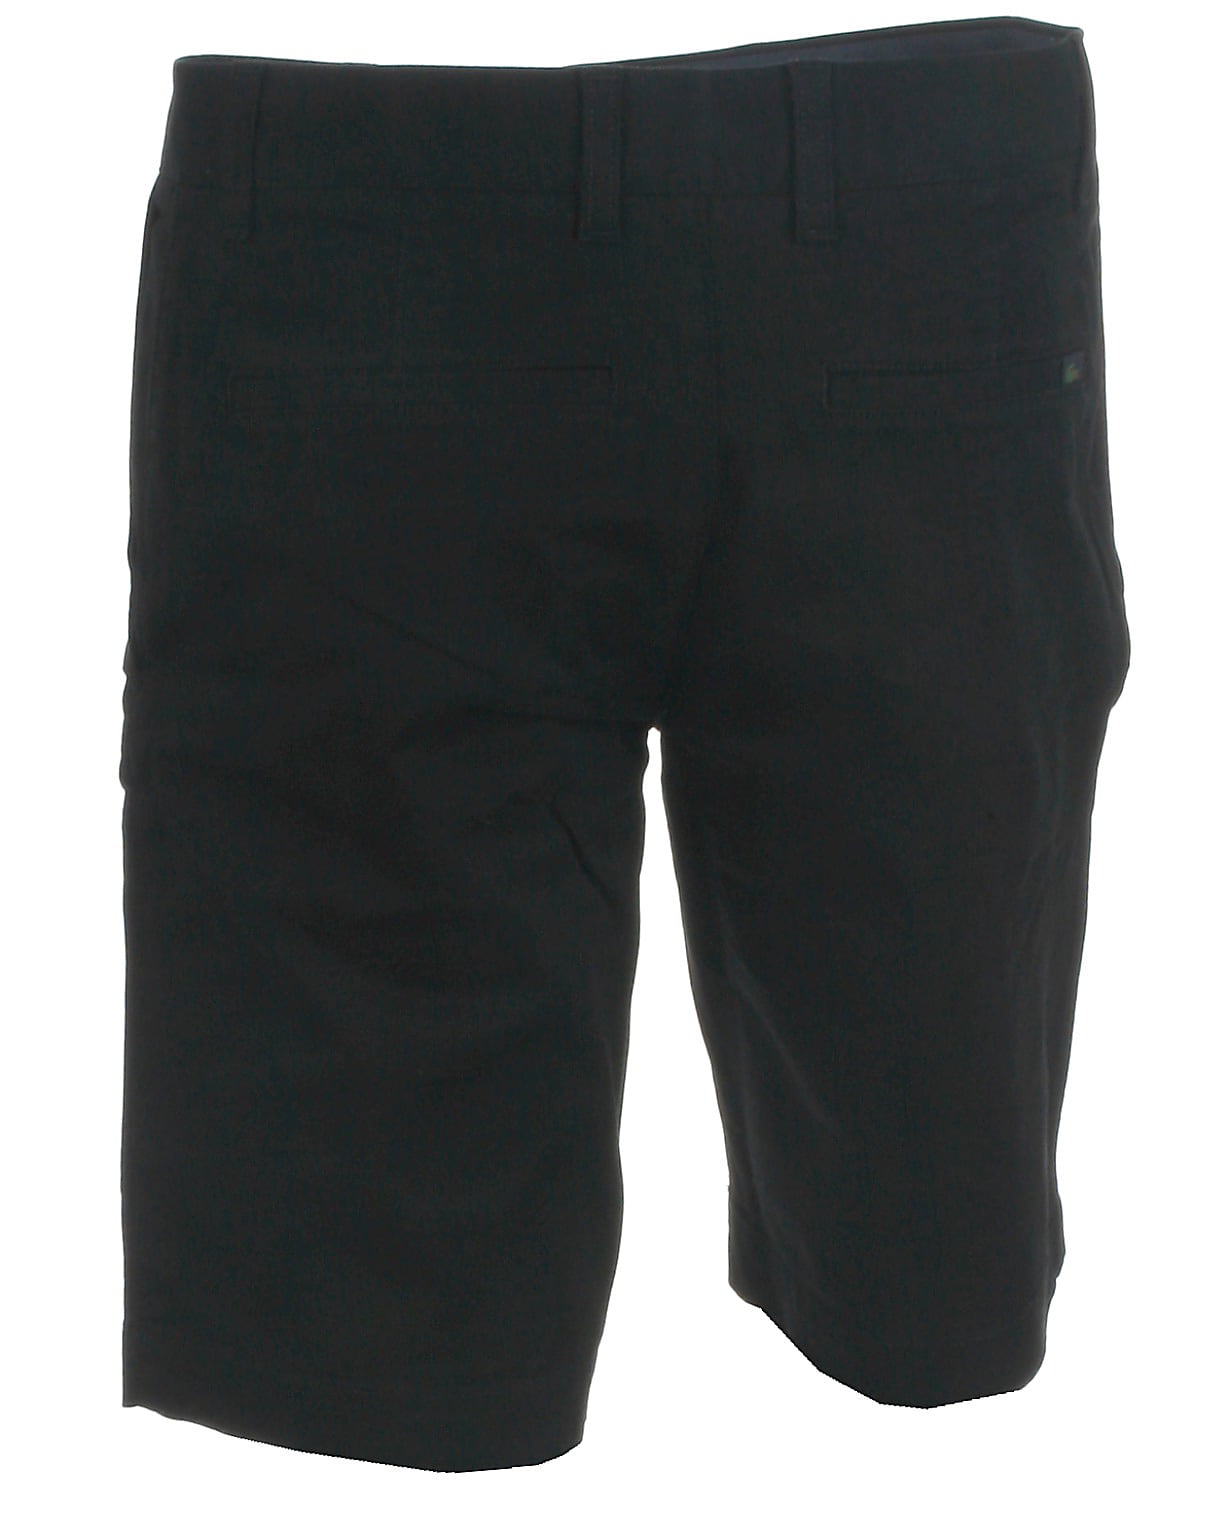 Se Lacoste chino shorts, sort - 194,XL+,44 hos Umame.dk